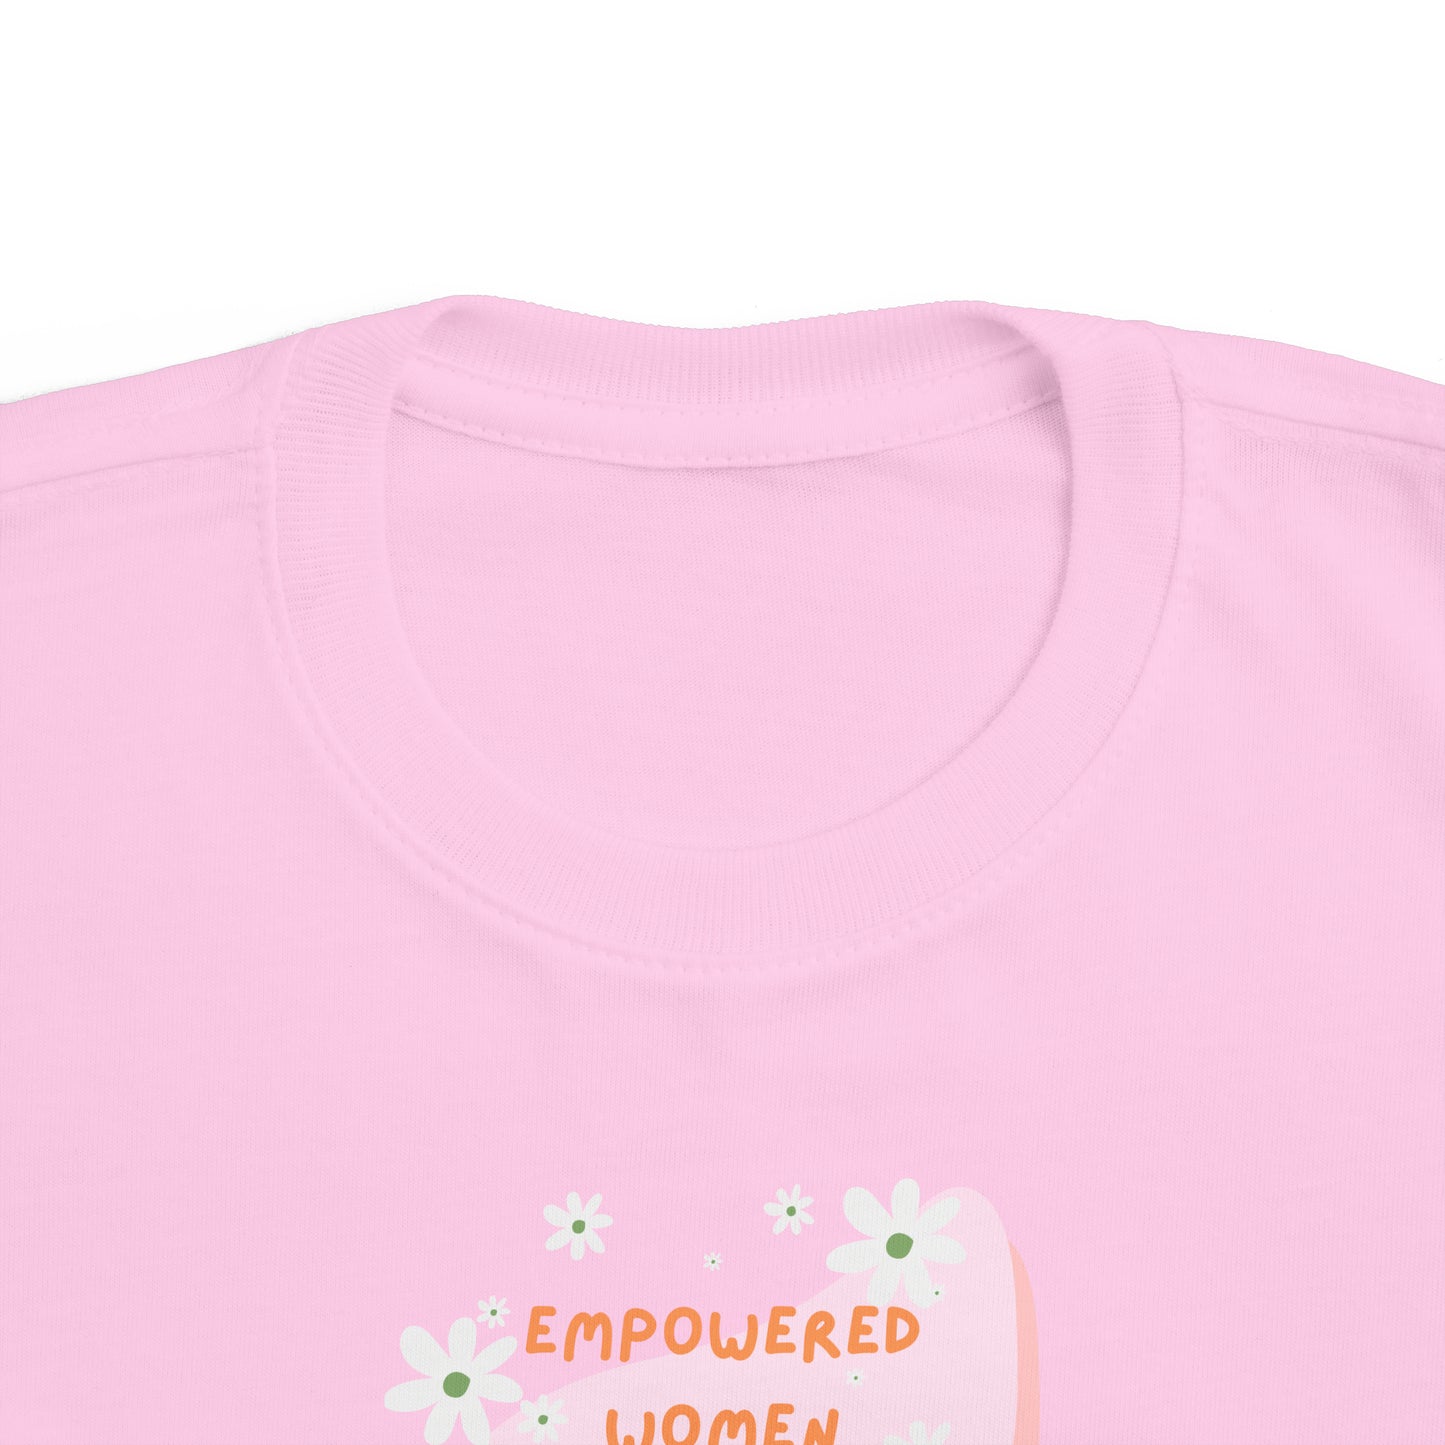 EMPOWERED WOMEN T-shirt - toddler